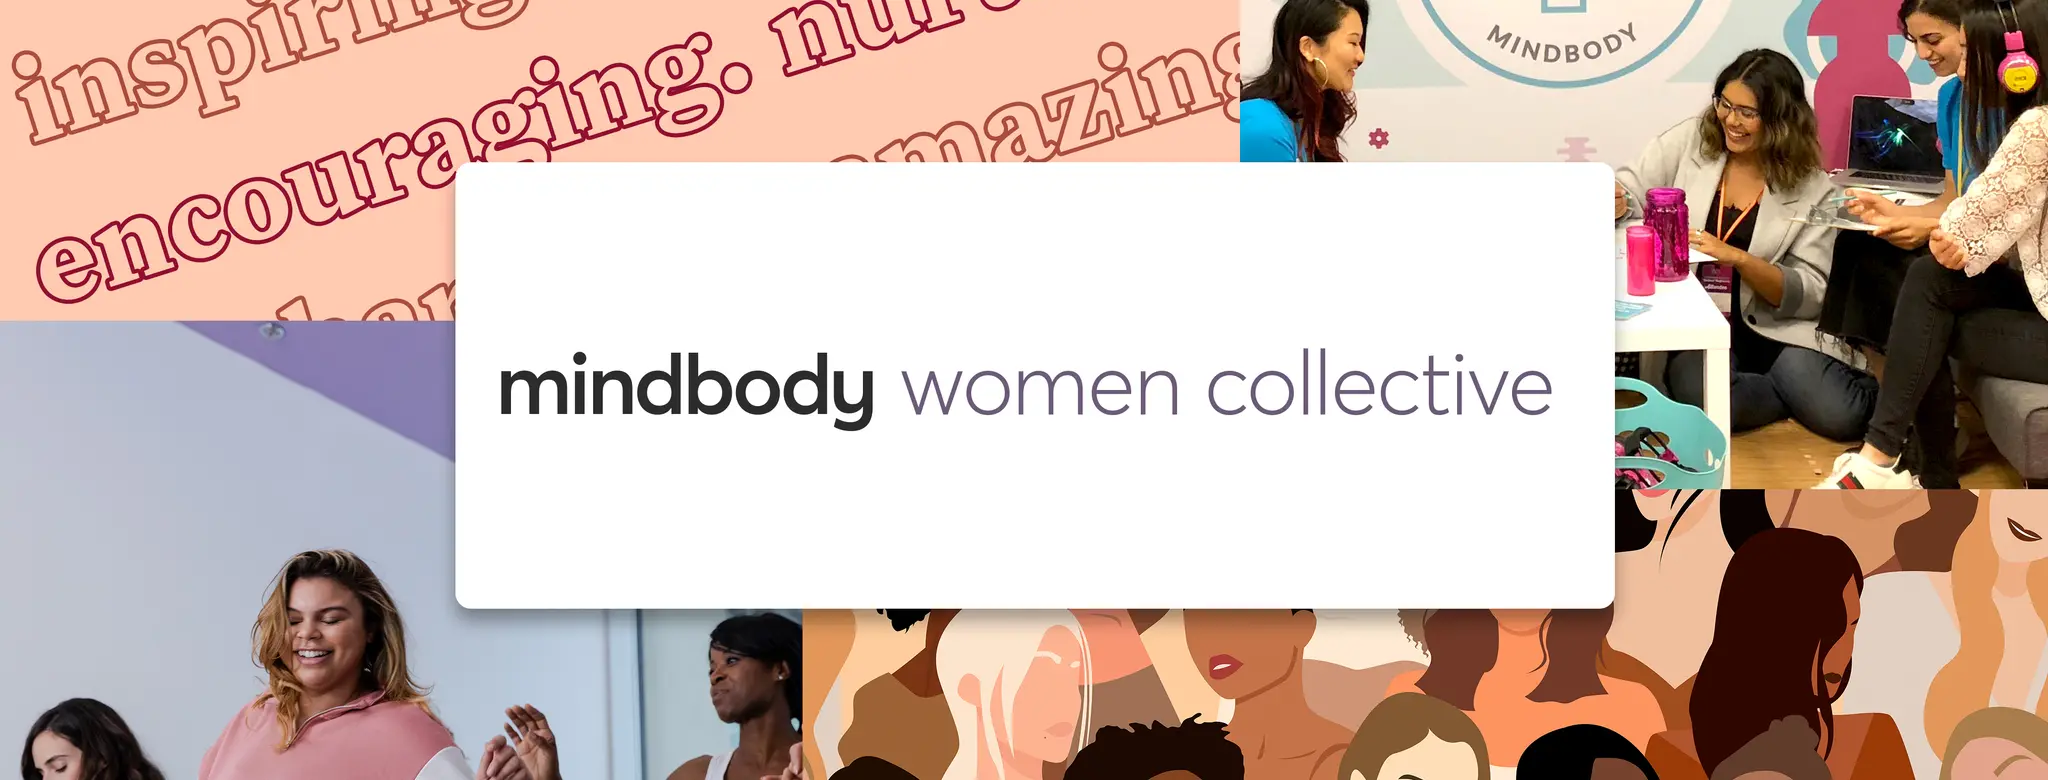 mindbody women collective header image